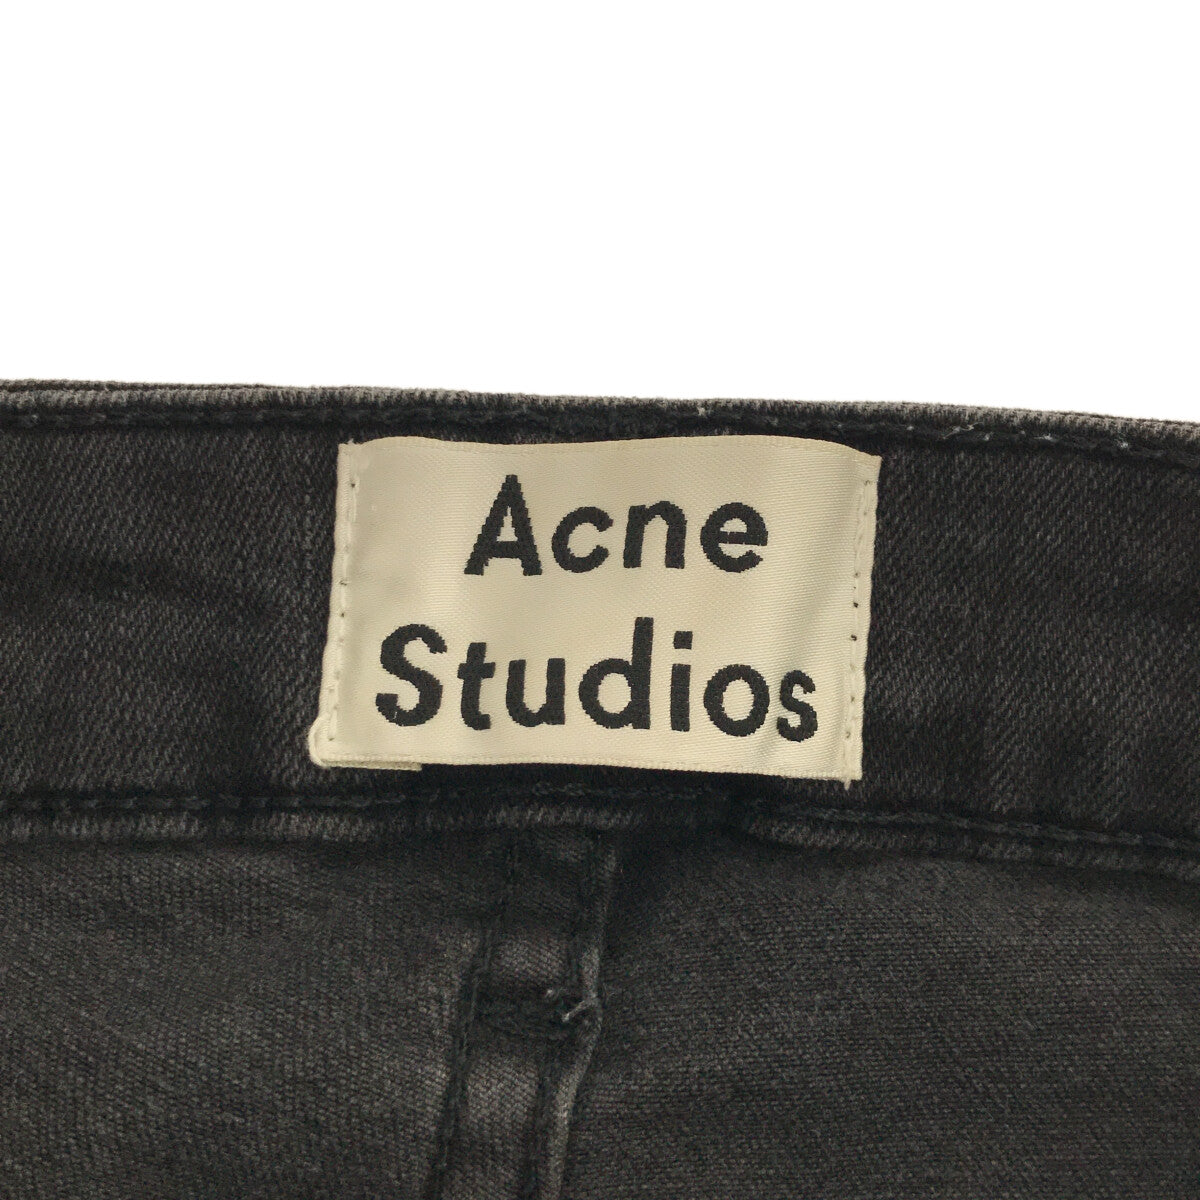 Acne Studios / アクネストゥディオズ | ブラックデニム スキニーパンツ | 24 | チャコール | レディース